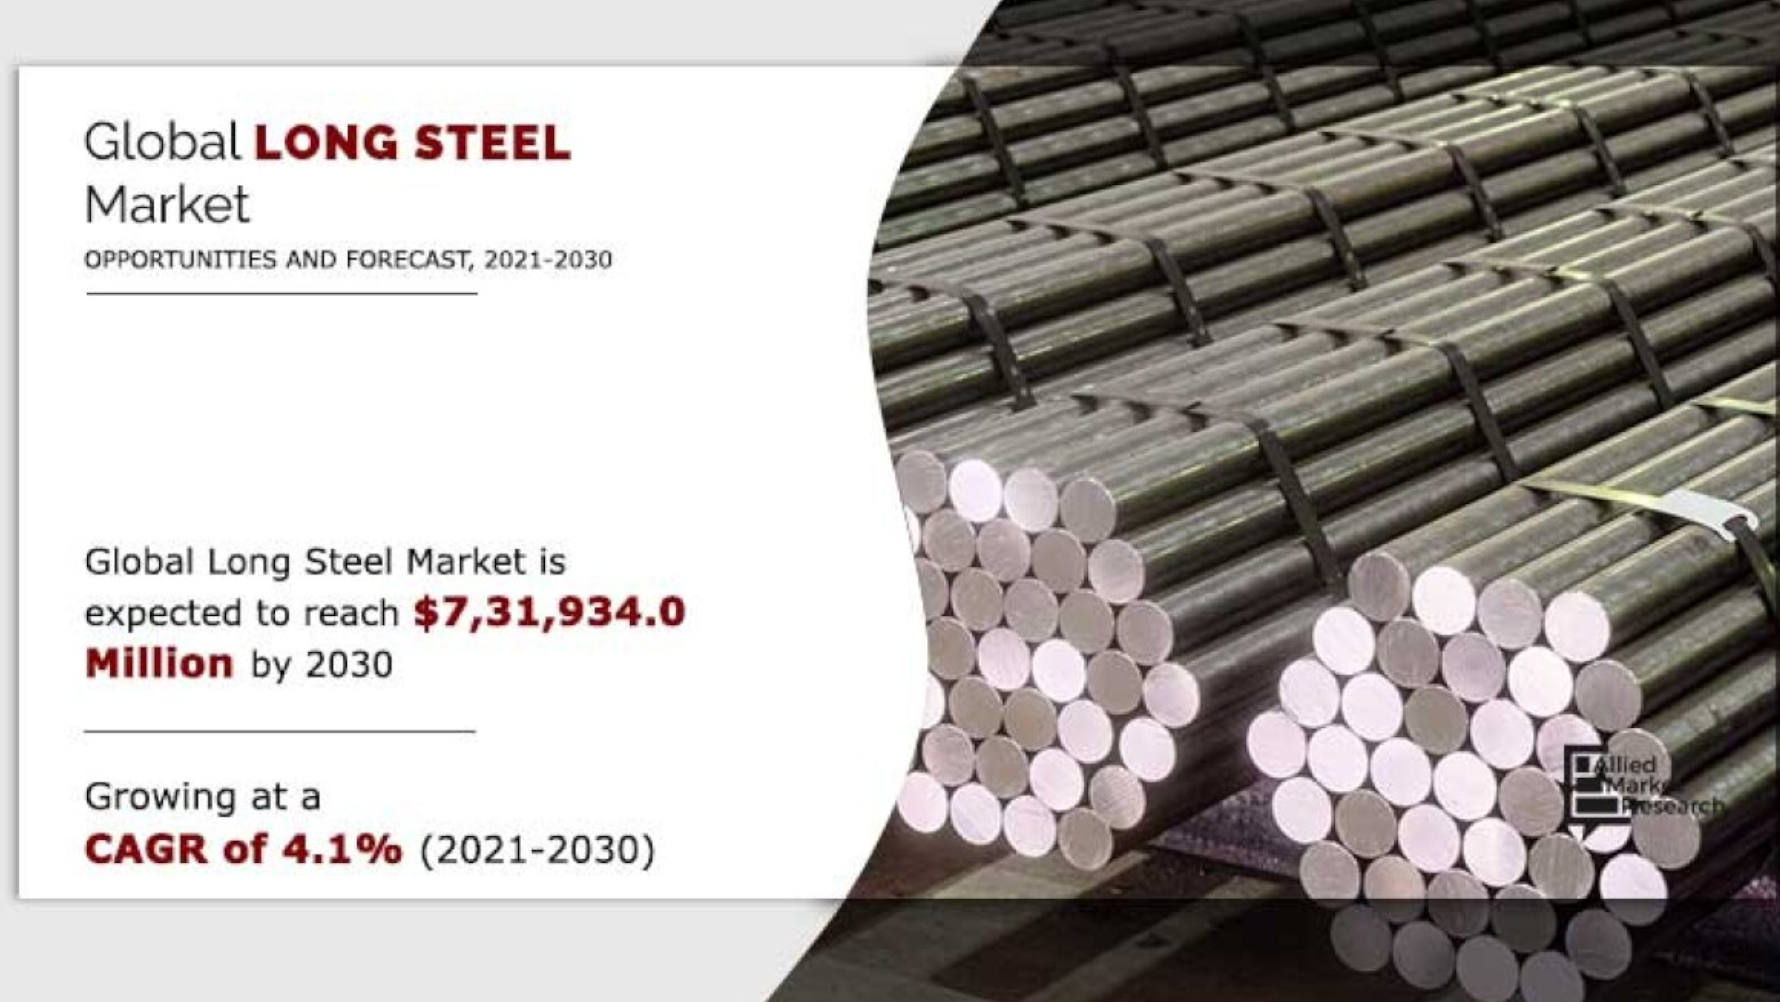 Lean impacts long steel market